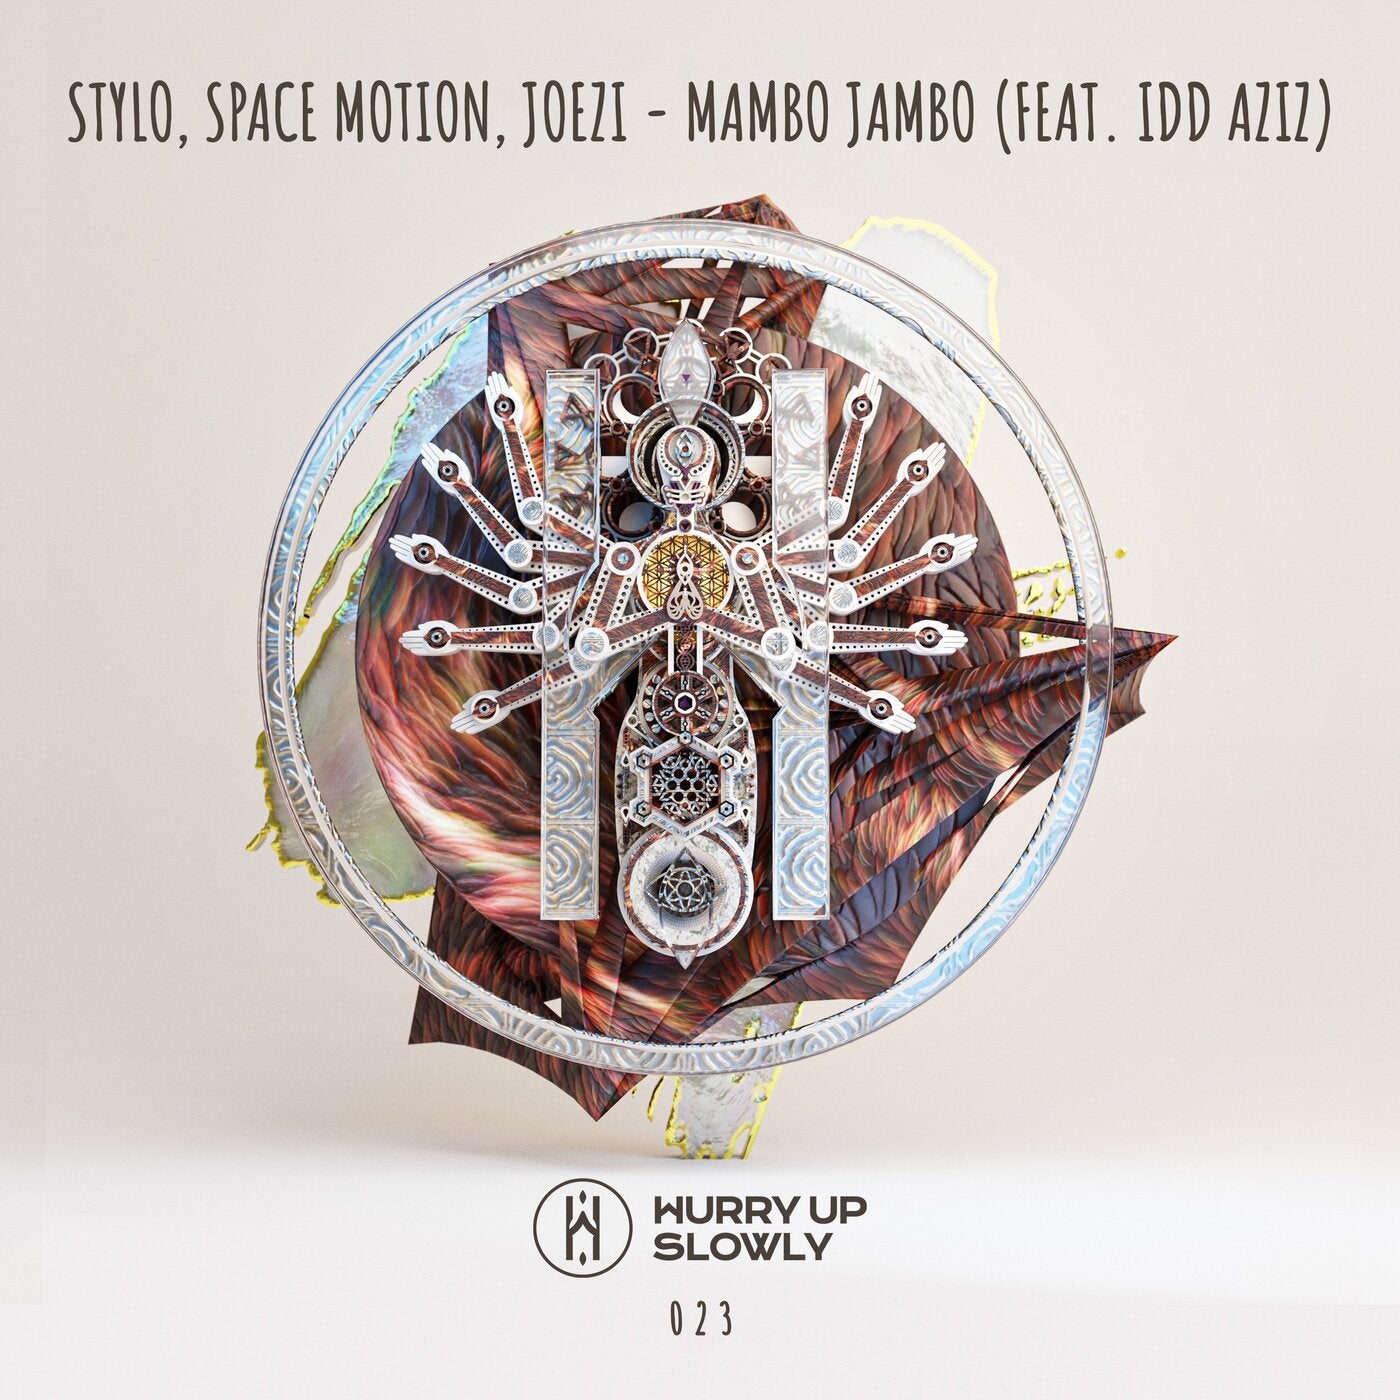 Stylo, Space Motion, Idd Aziz, Joezi - Mambo Jambo (Original Mix)